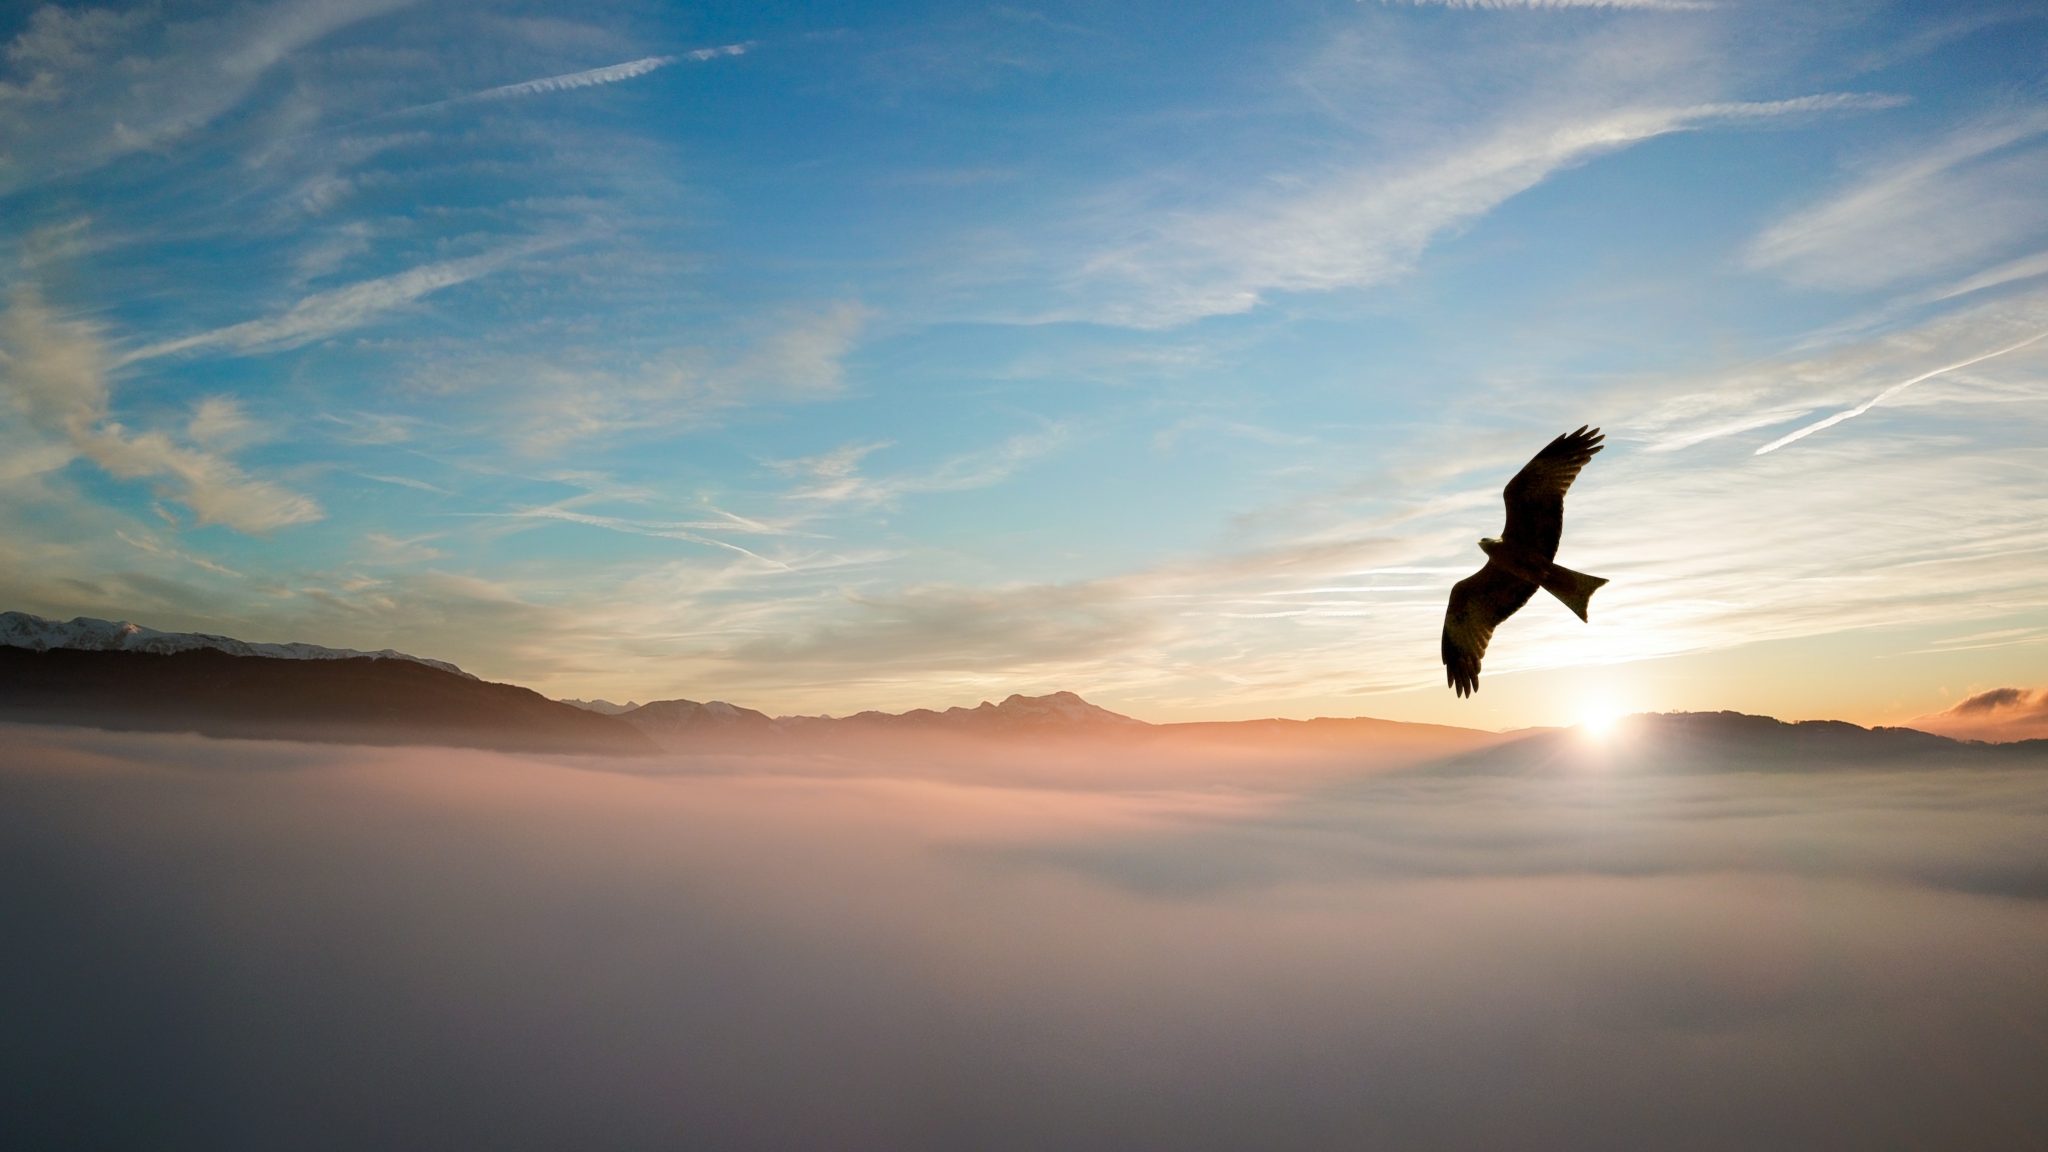 Set to soar - águila volando sobre las montañas a través de las nubes con la puesta de sol en el fondo